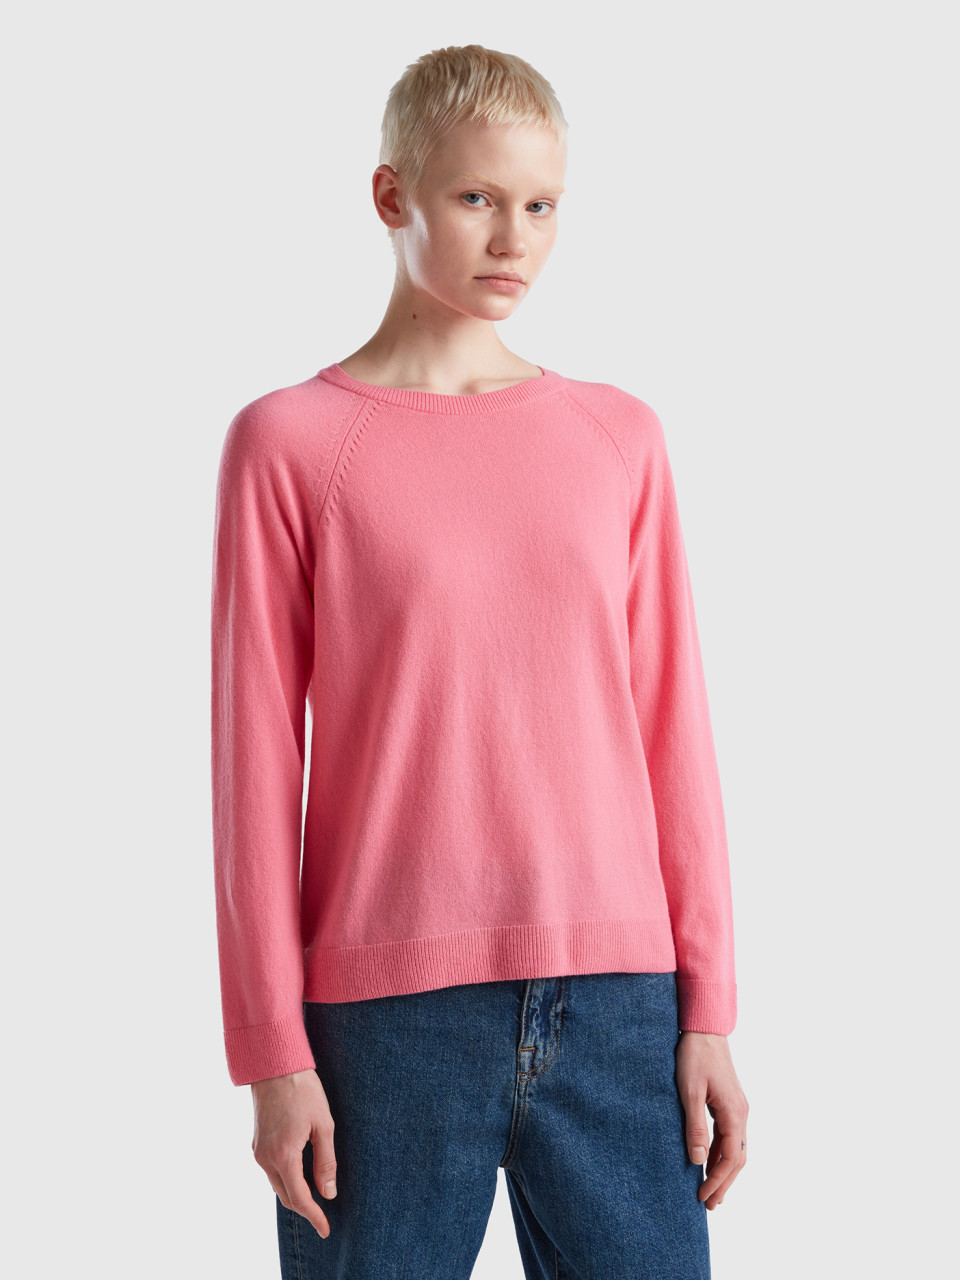 Benetton, Pullover Mit Rundausschnitt In Einer Mischung Aus Wolle Und Cashmere In Rosa, Pink, female